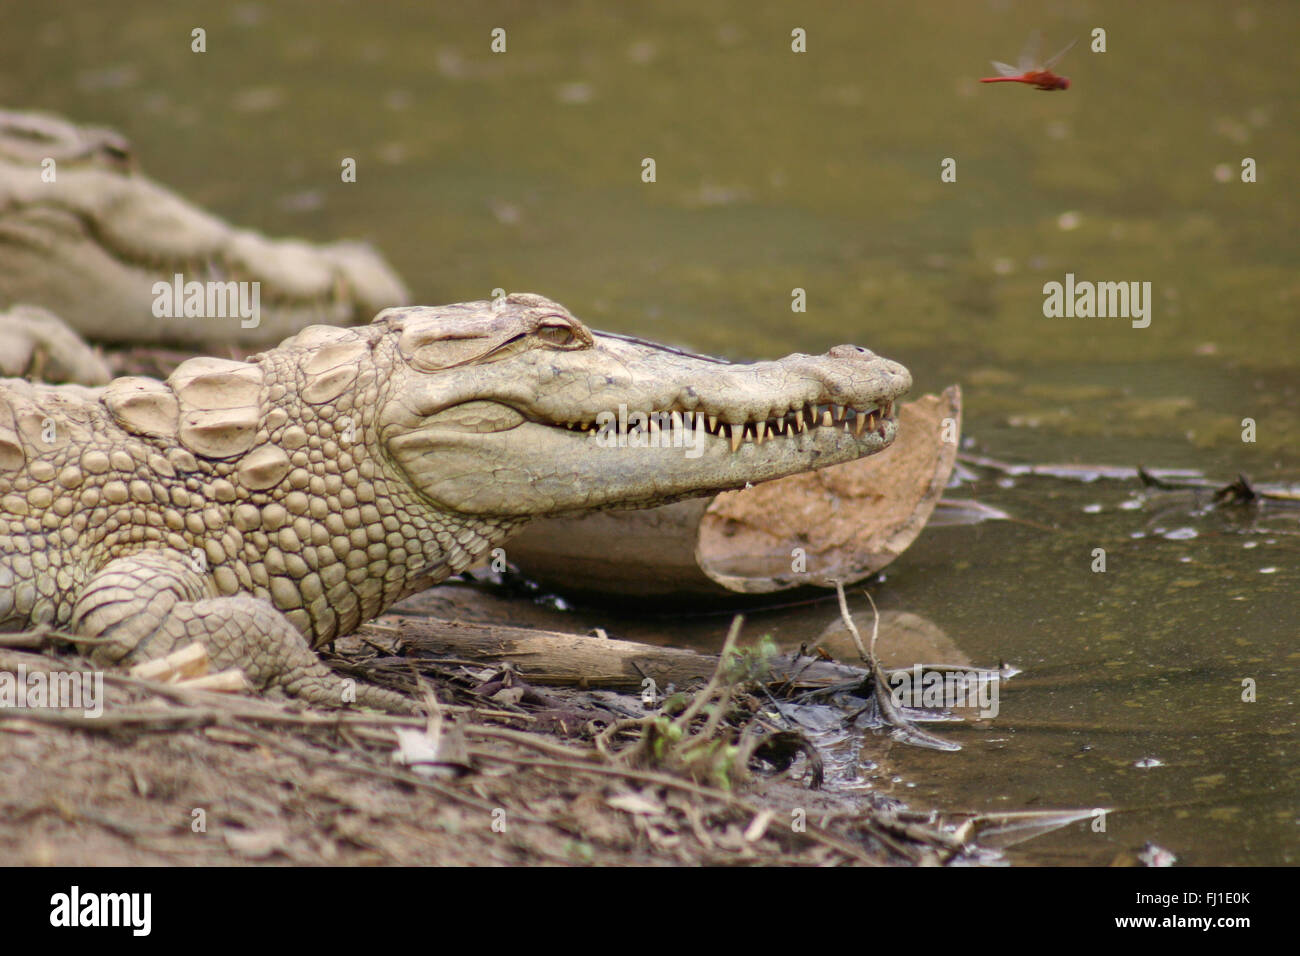 Krokodile in der Dogon, Mali - Stockfoto